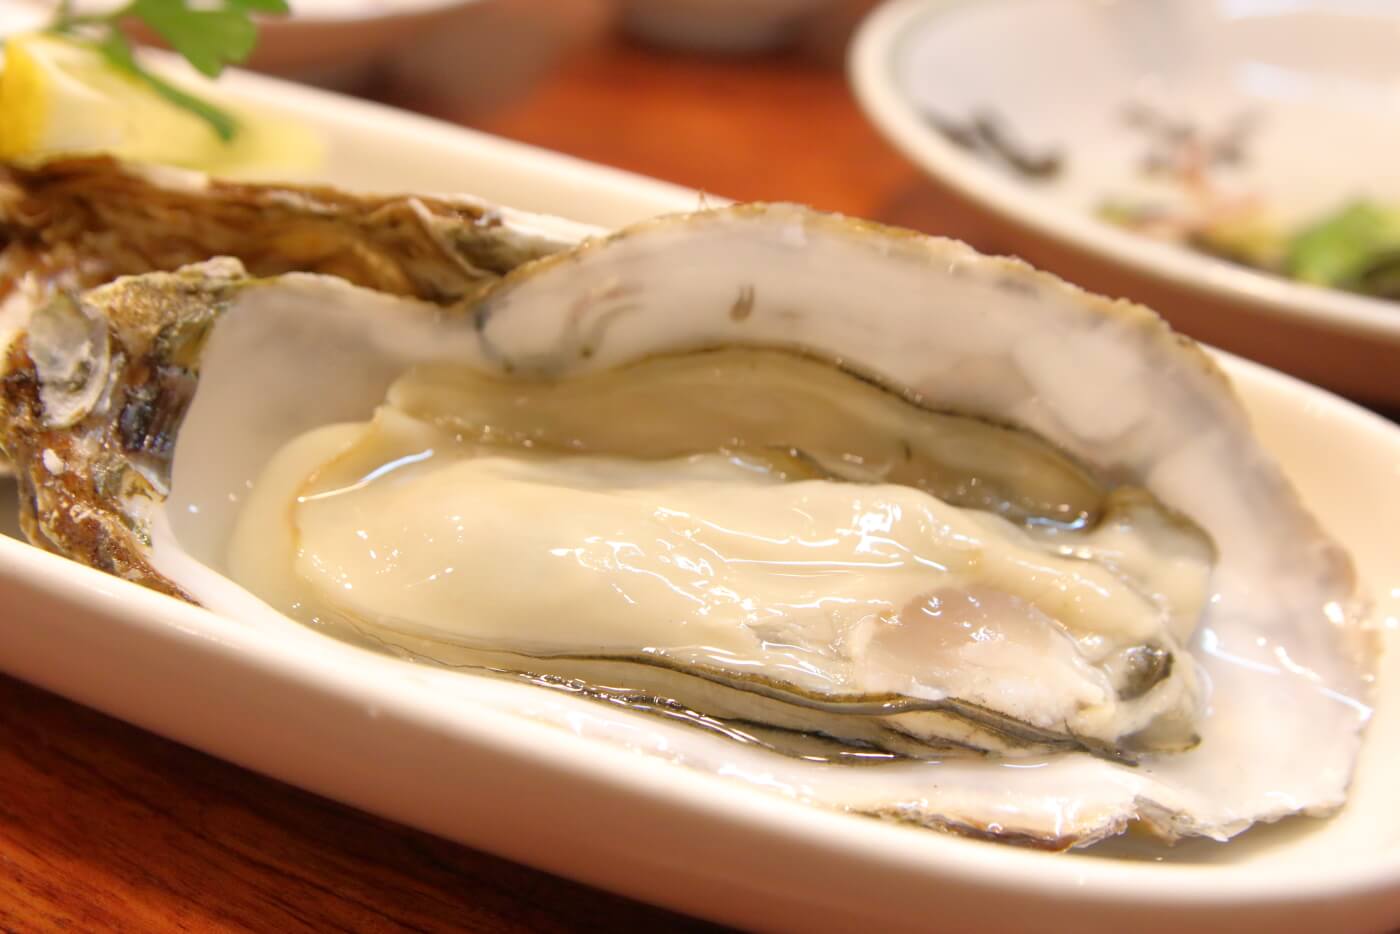 リニューアルオープンした高知市の居酒屋英屋の料理 生牡蠣